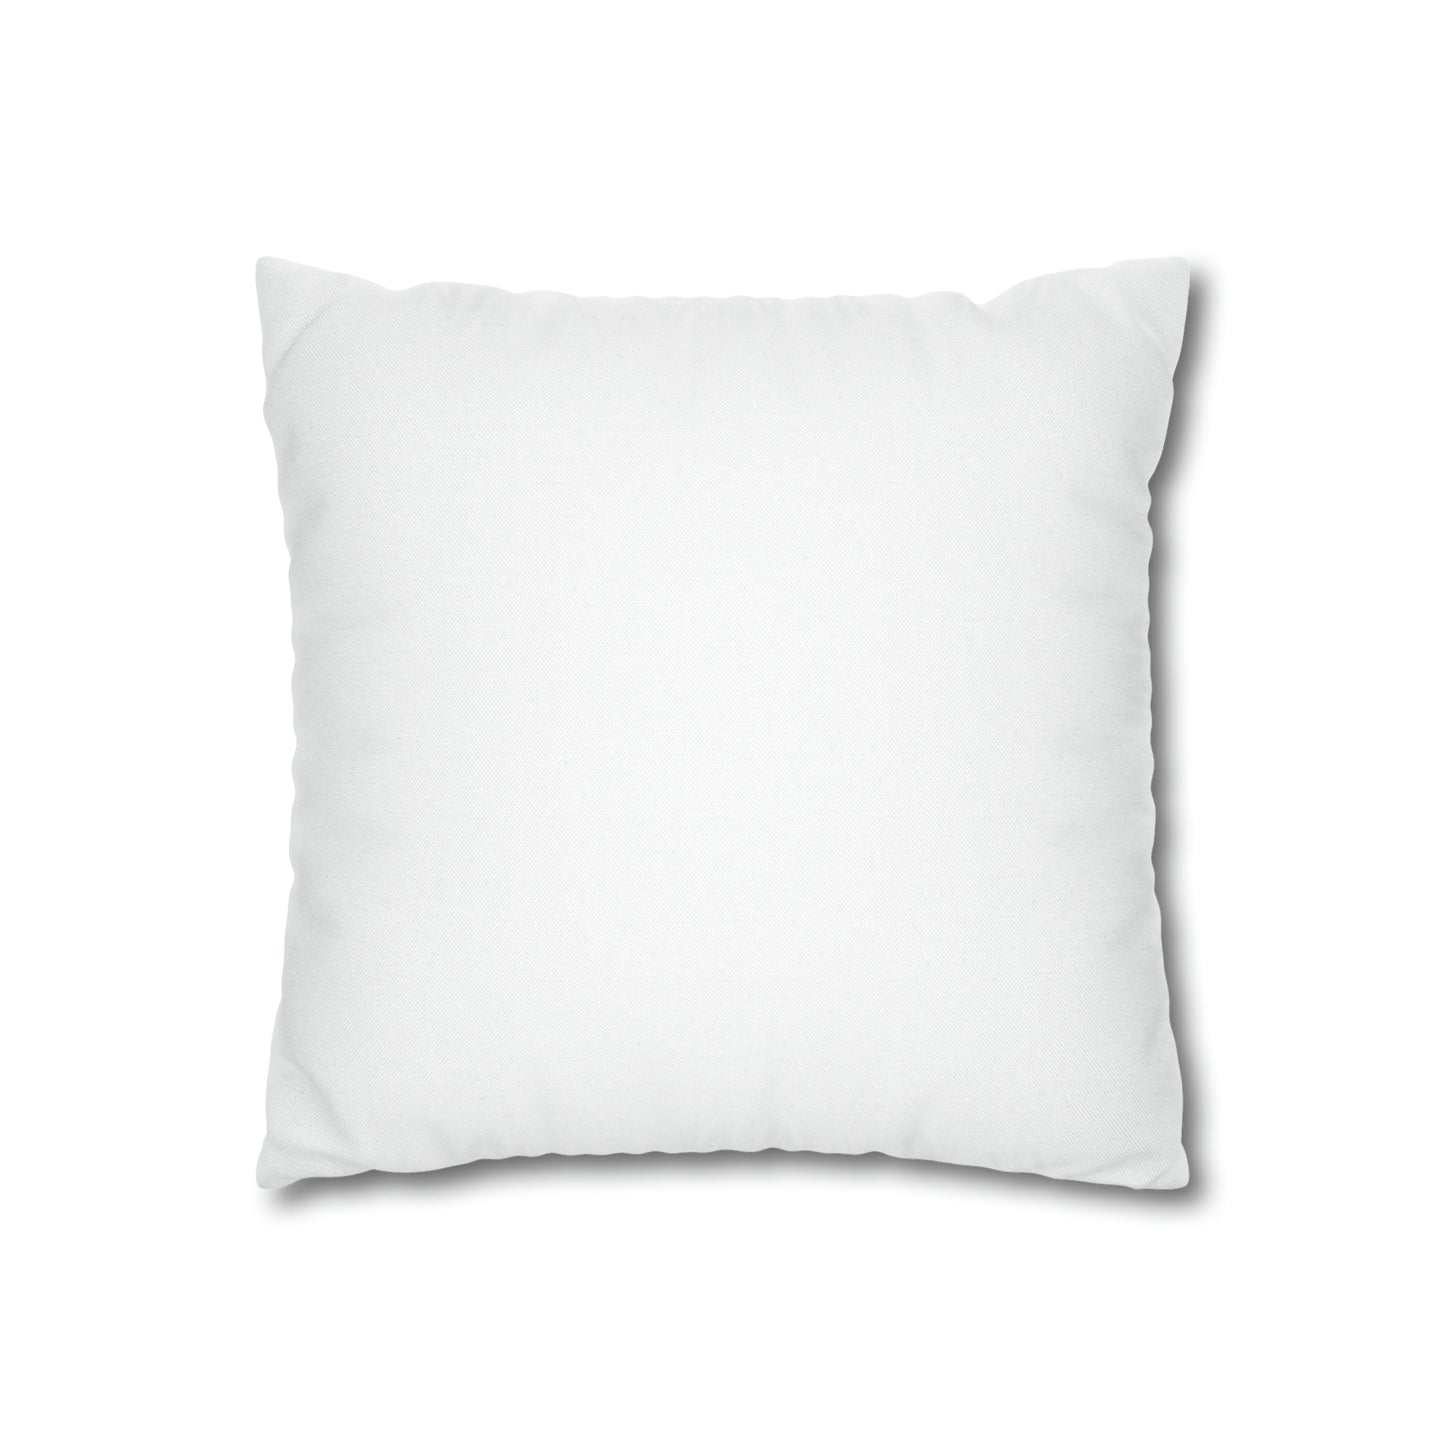 Bunnymas Spun Polyester Square Pillow Case